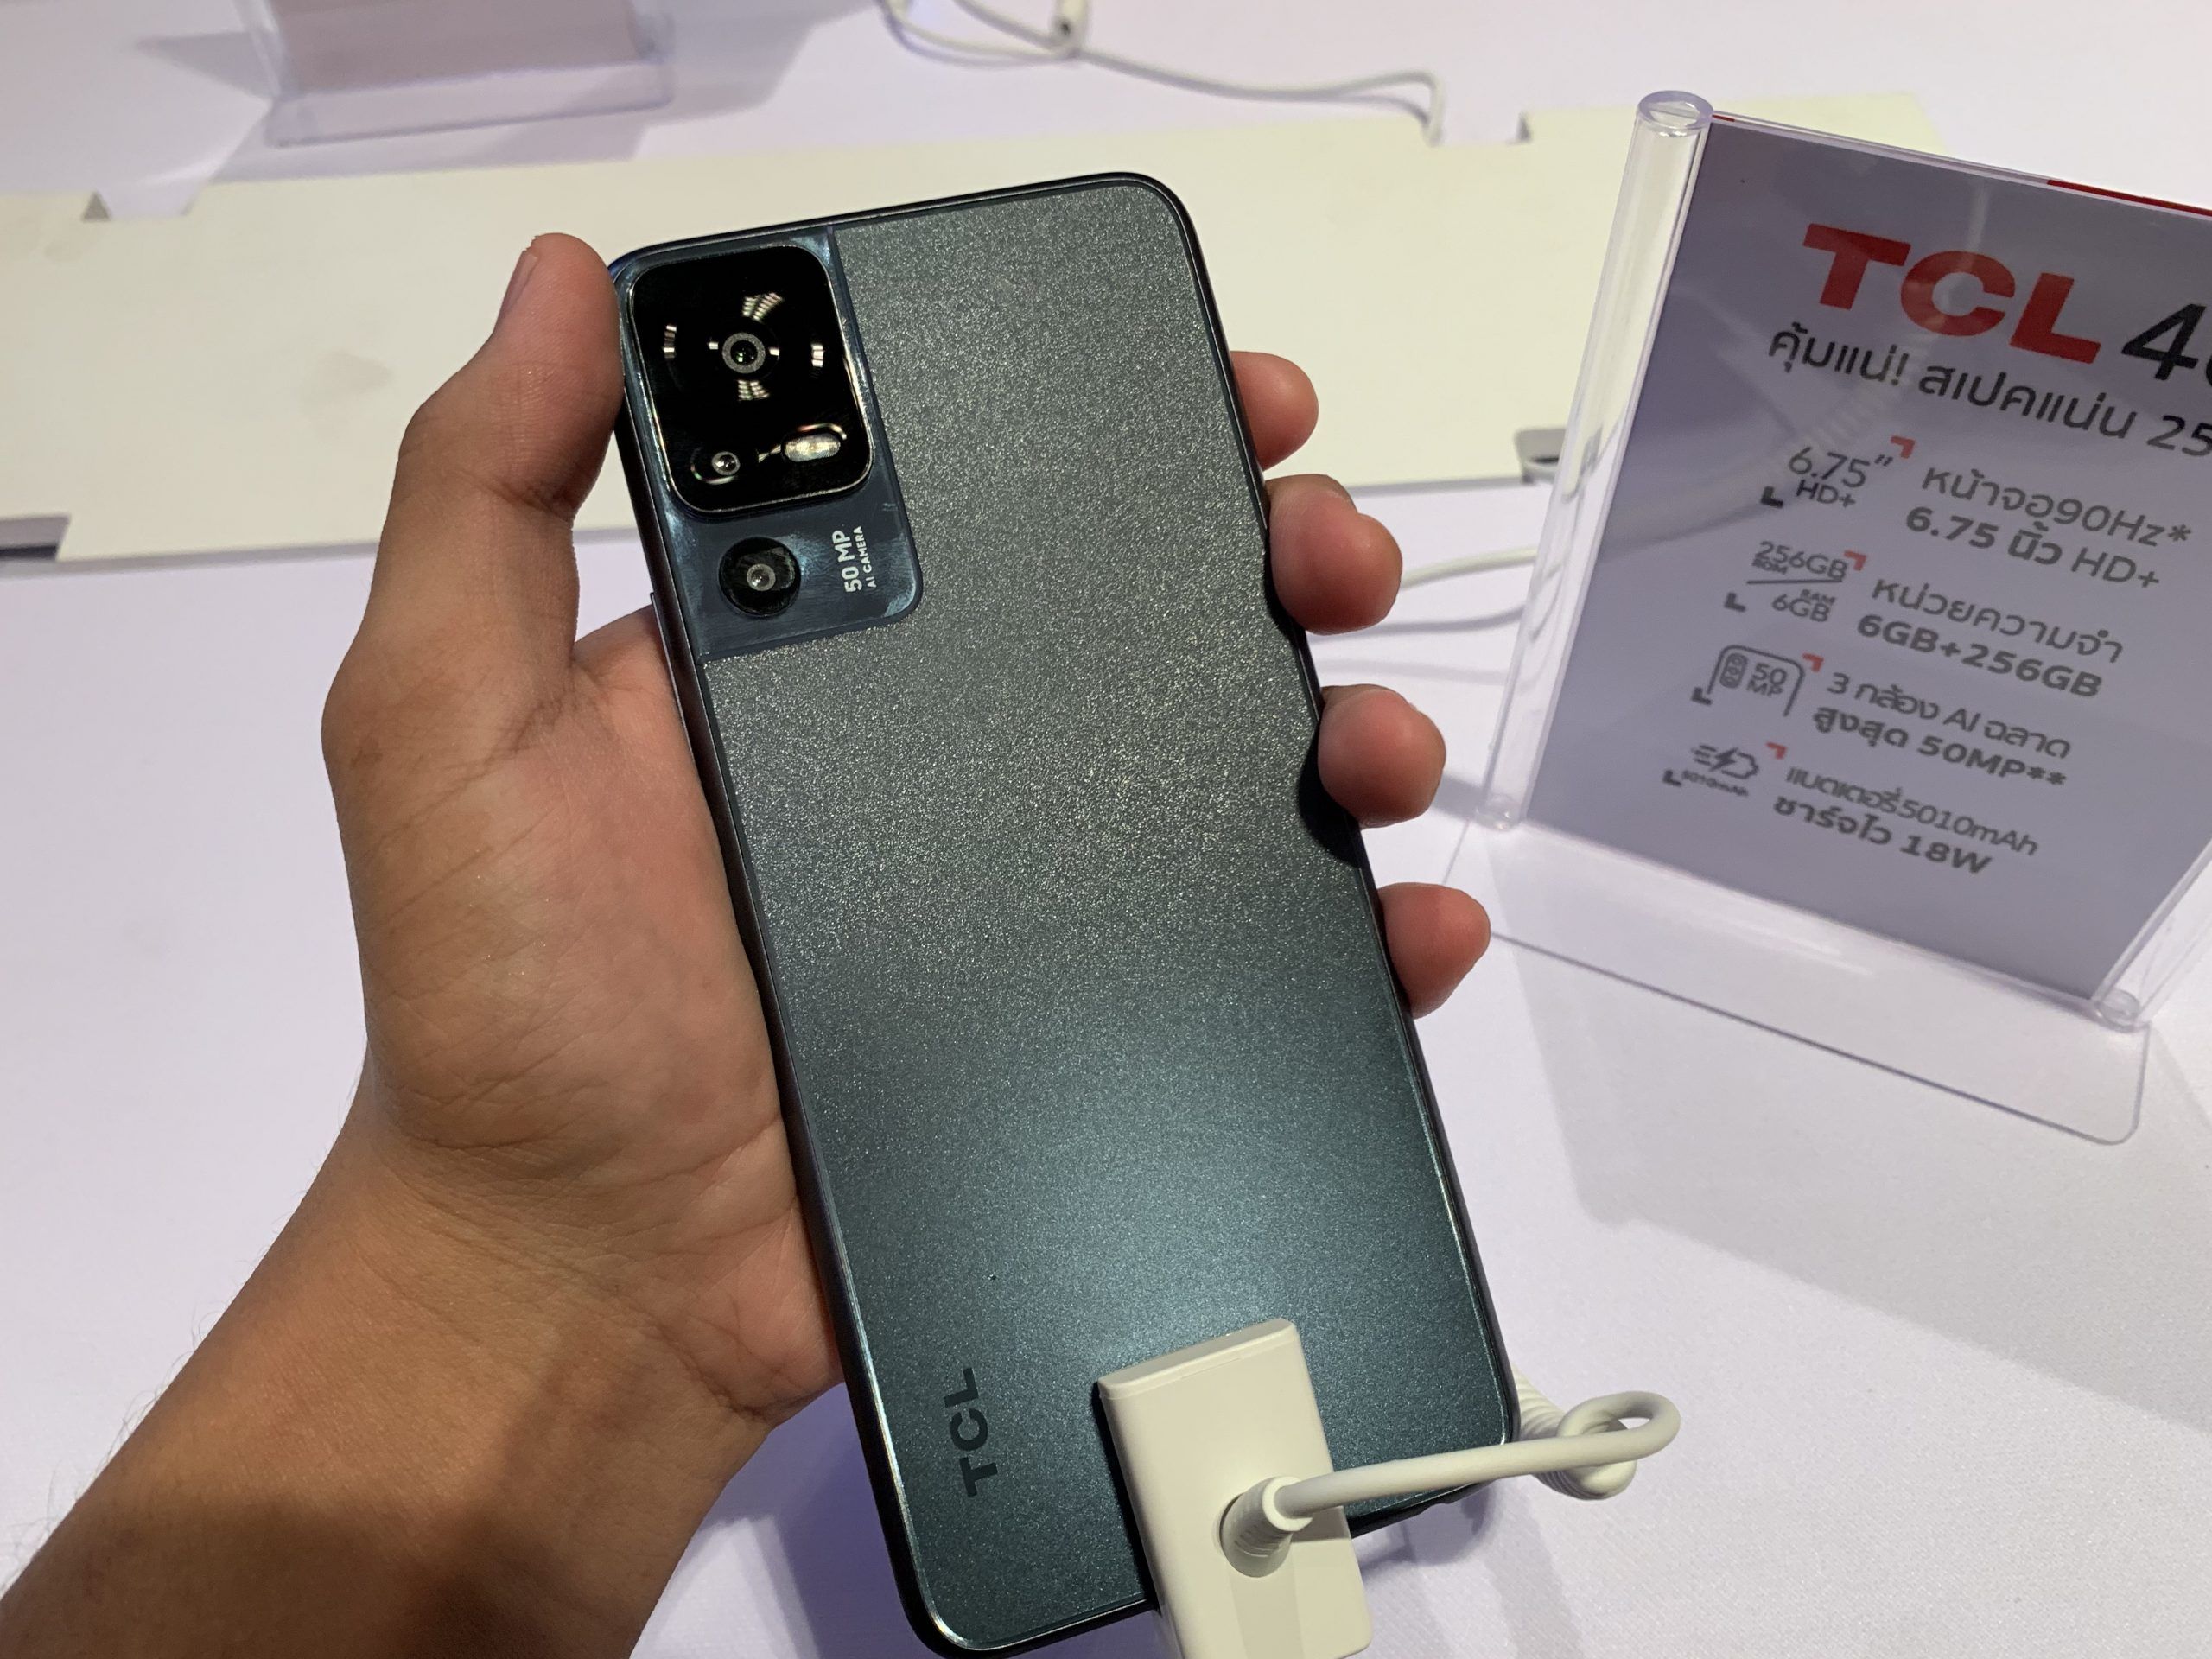 เปิดราคา TCL 40 Series สมาร์ทโฟน 3 รุ่นใหม่สุดคุ้ม จอใหญ่ แบตเยอะ เริ่มต้นแค่ 2,499 บาท